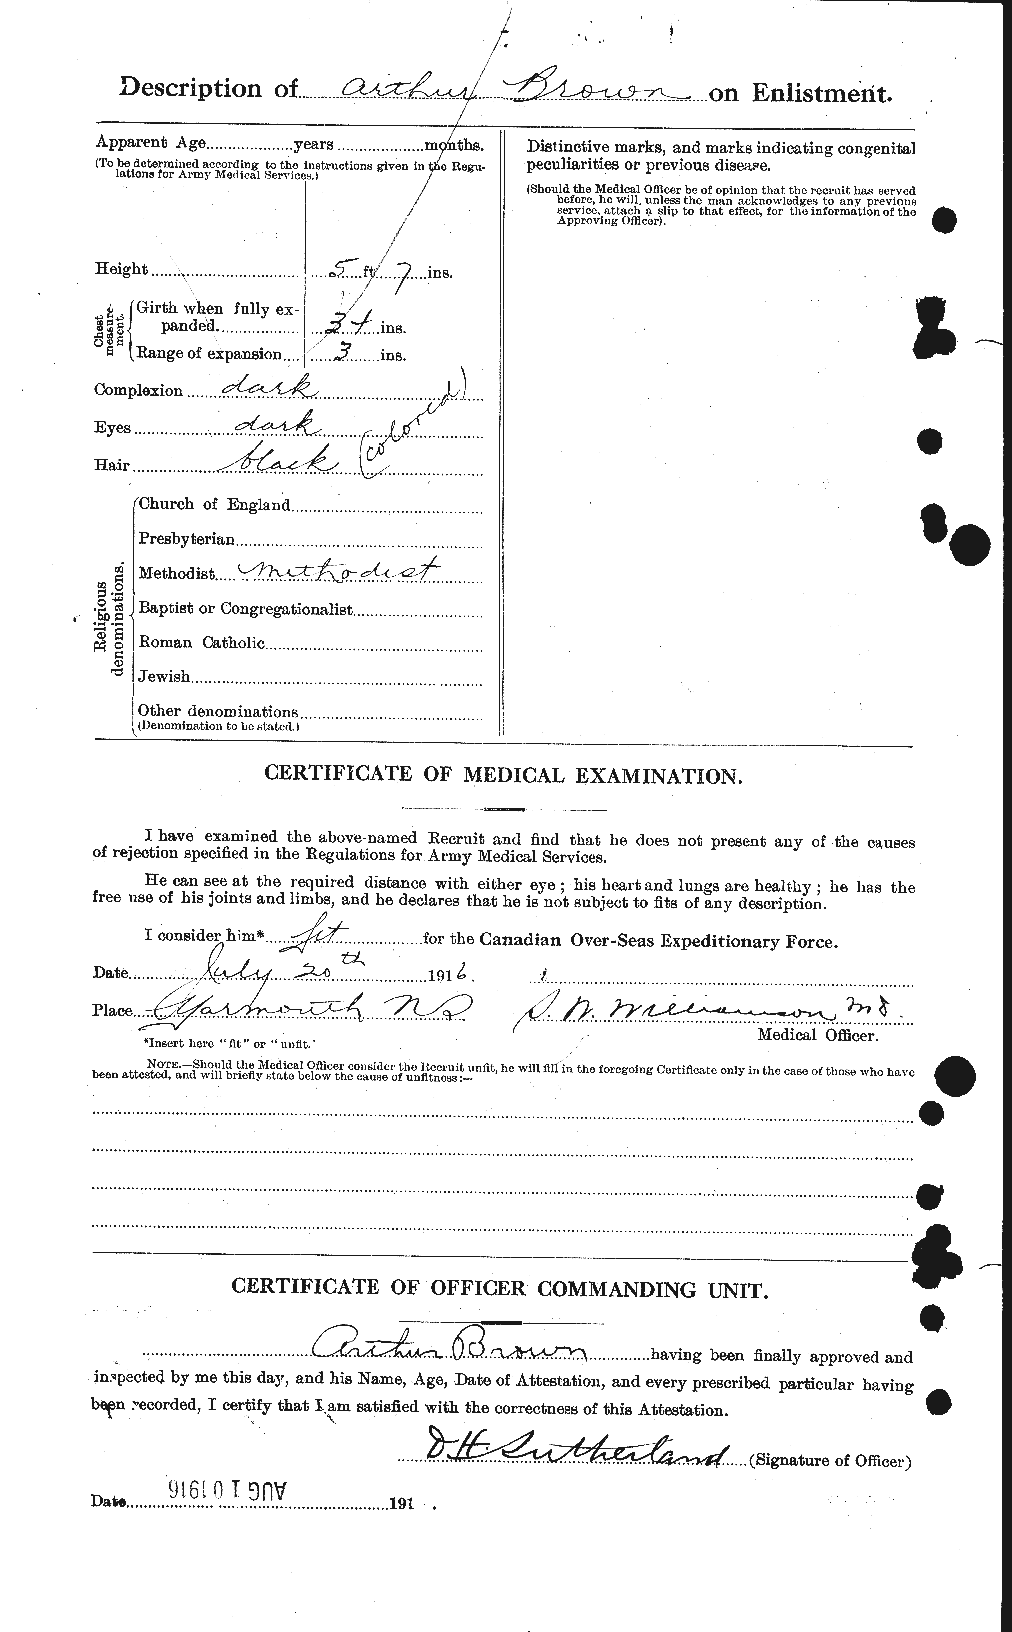 Dossiers du Personnel de la Première Guerre mondiale - CEC 264196b